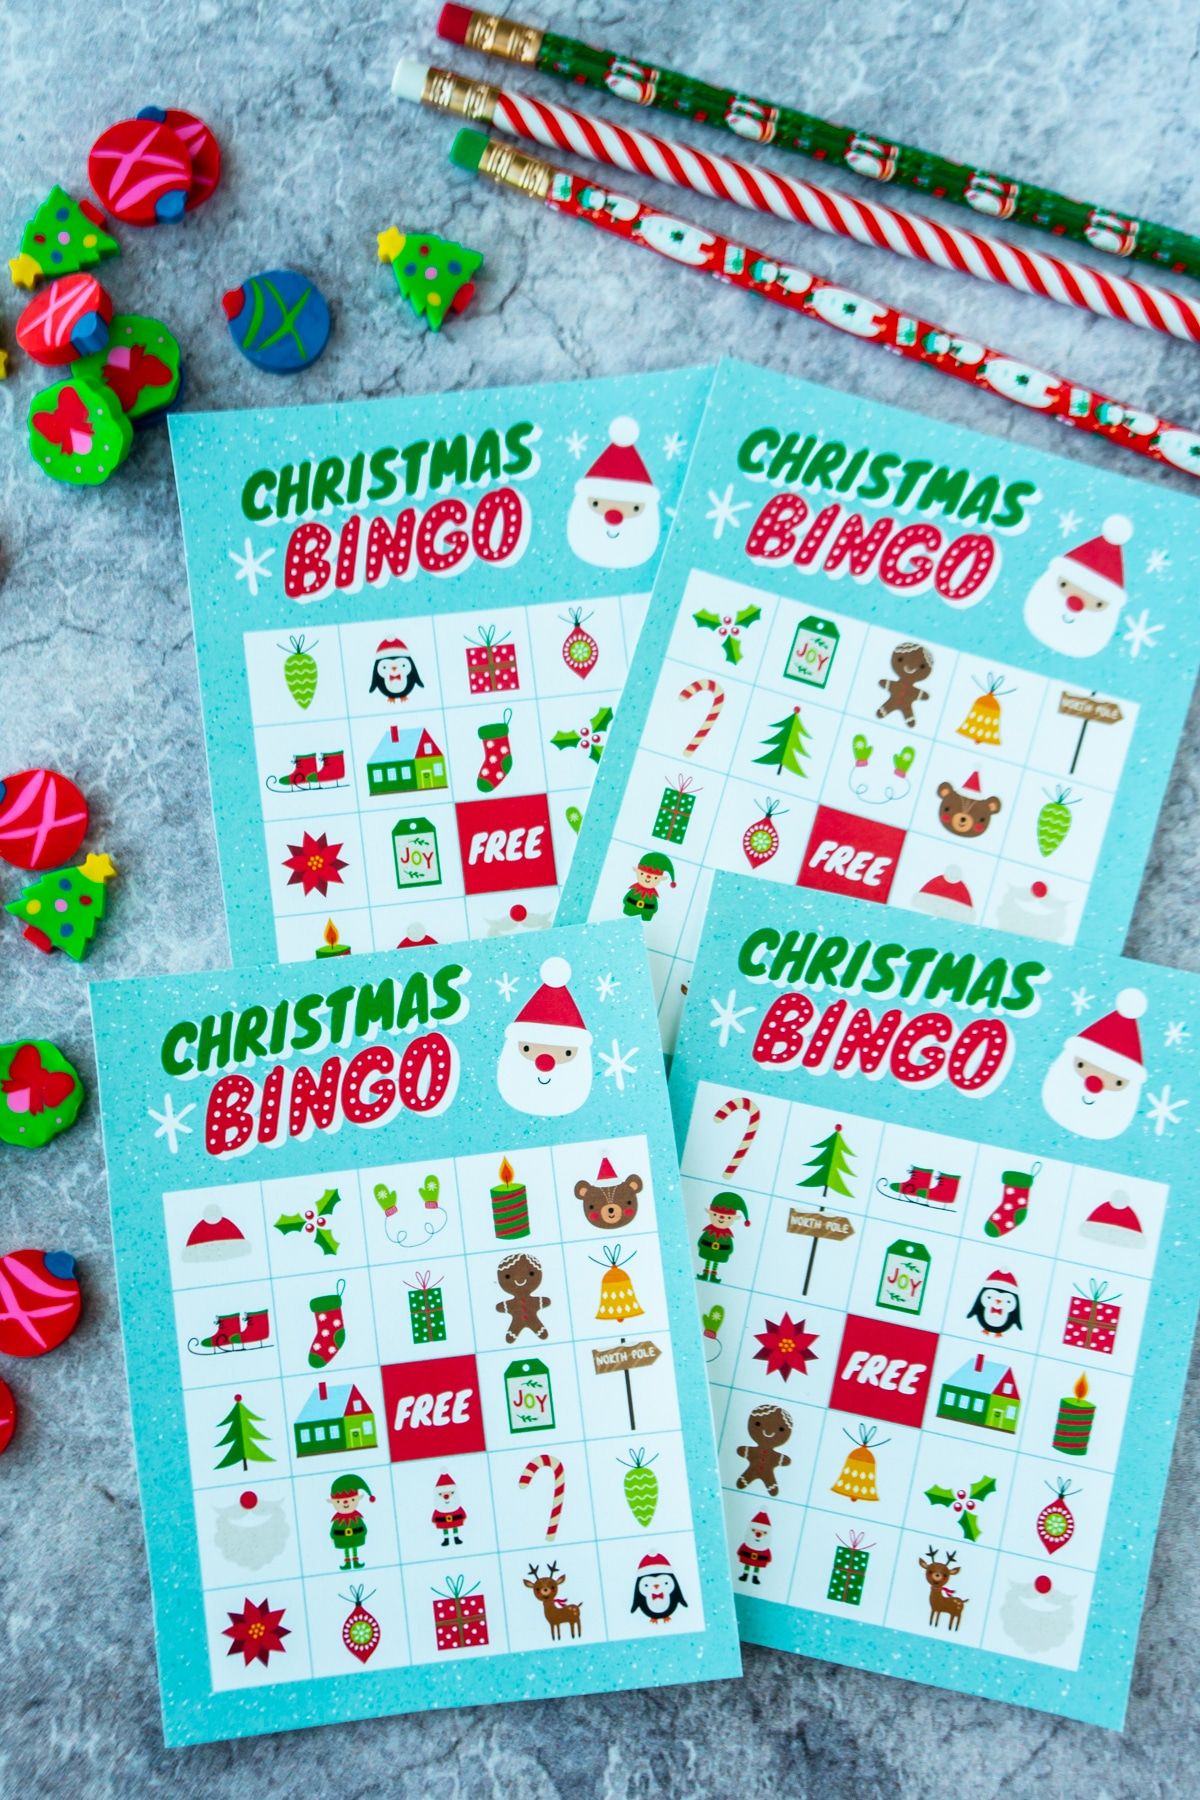 Χριστουγεννιάτικες κάρτες bingo με γόμες Χριστουγέννων